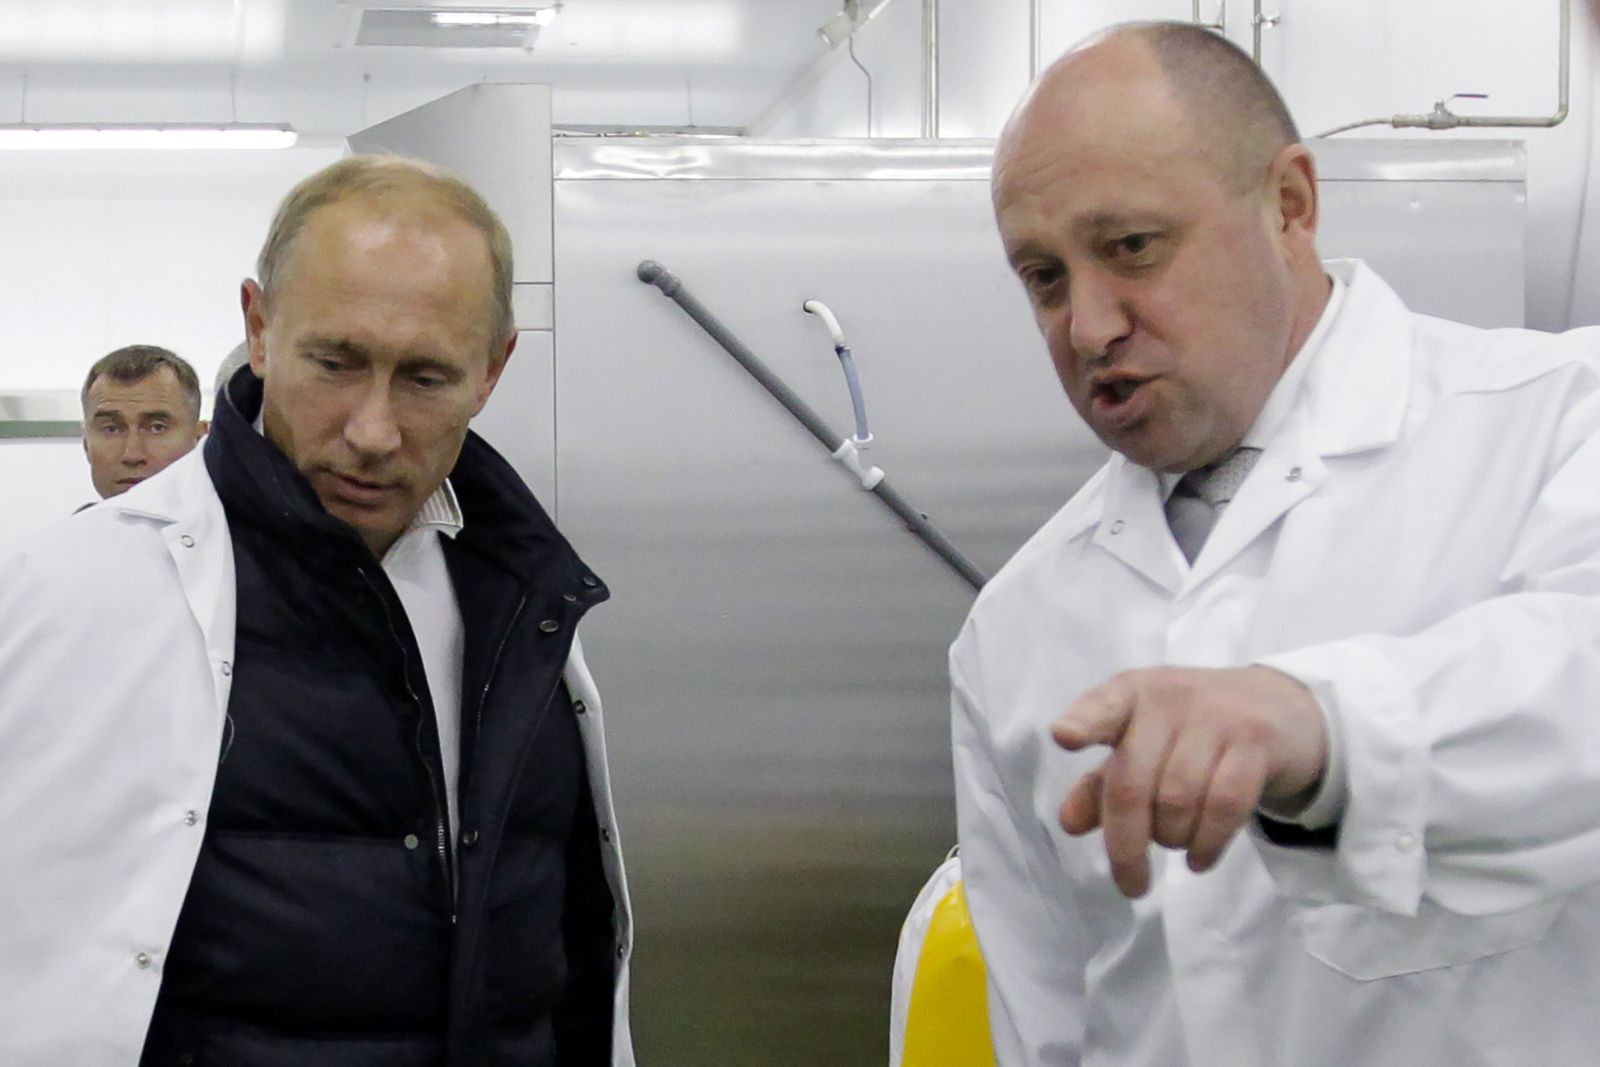  يفجيني بريجوجين يطلع فلاديمير بوتين، الذي كان آنذاك رئيساً للوزراء على أحد مطاعمه في سانت بطرسبرغ. 20 سبتمبر 2010 - AFP